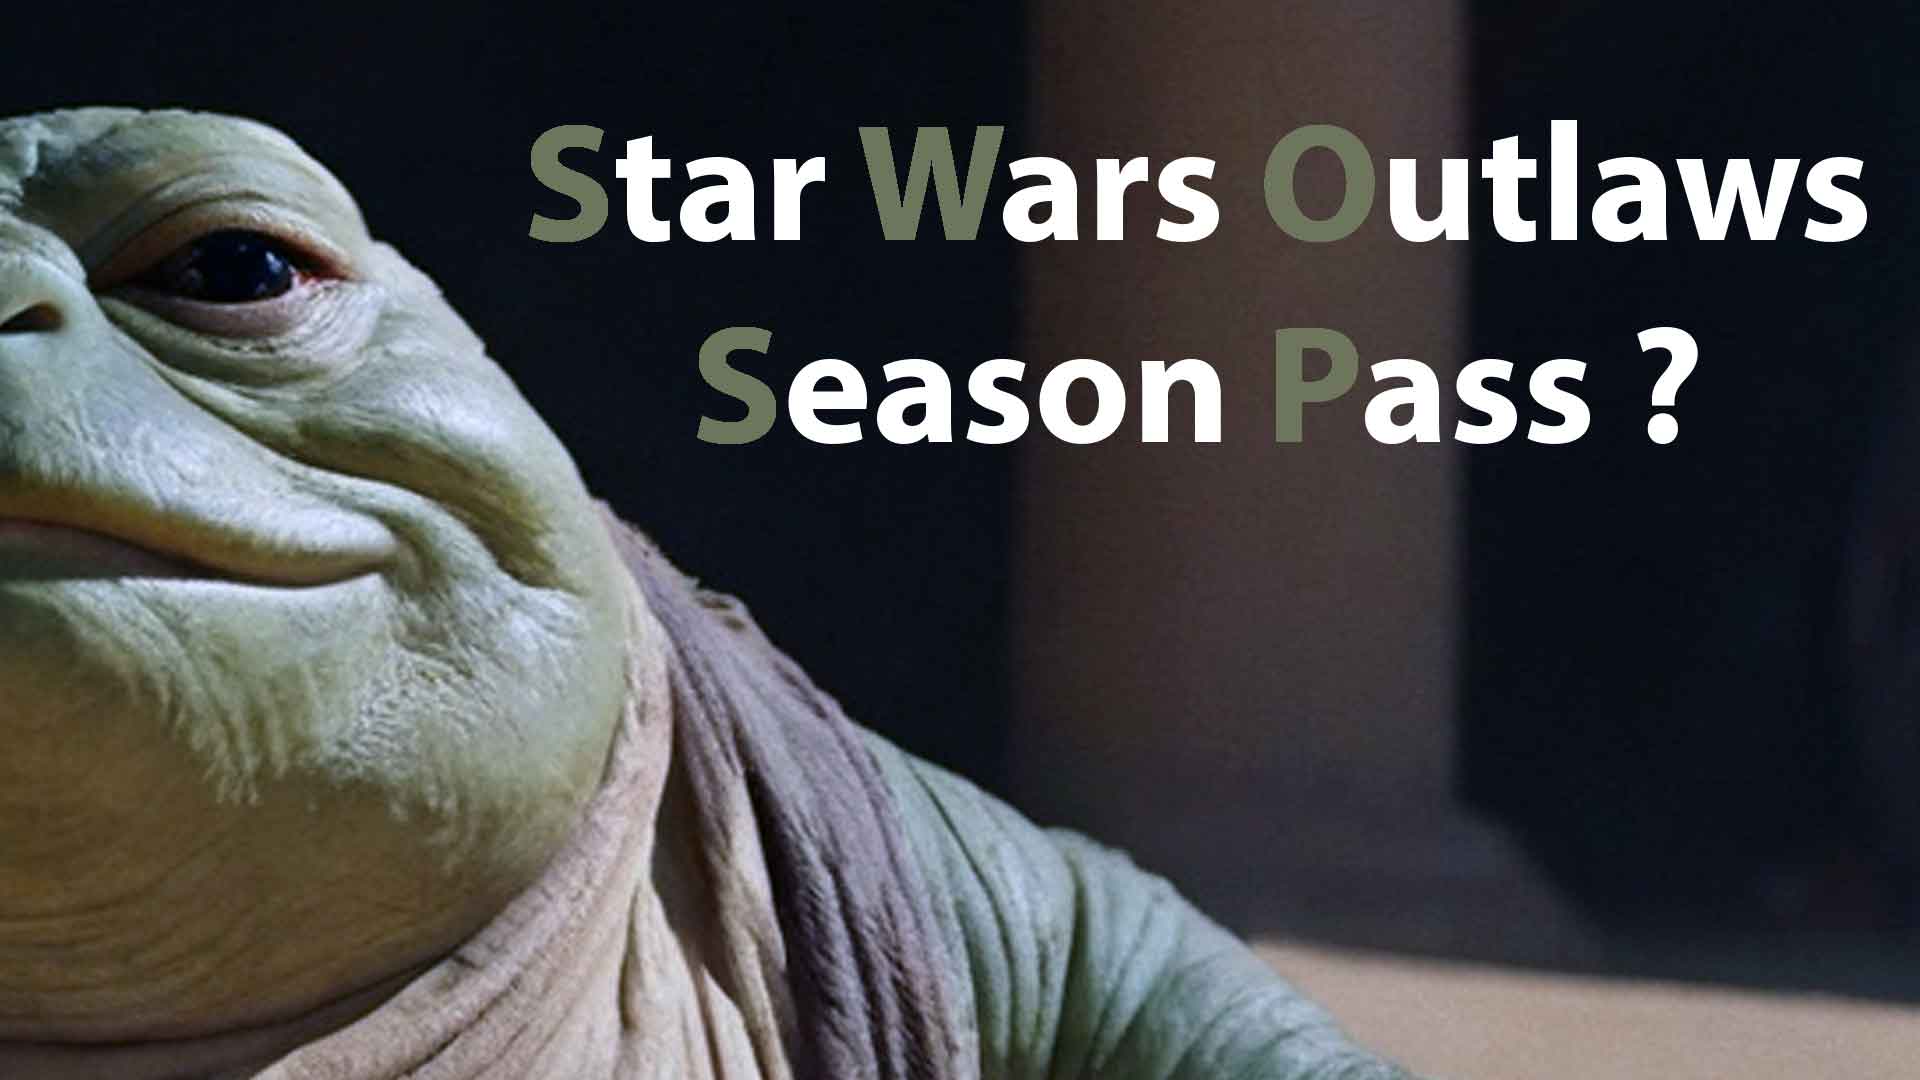 Star Wars Outlaws, le personnage Jabba le Hutt sera-t-il présent qu'au travers du Season Pass ?